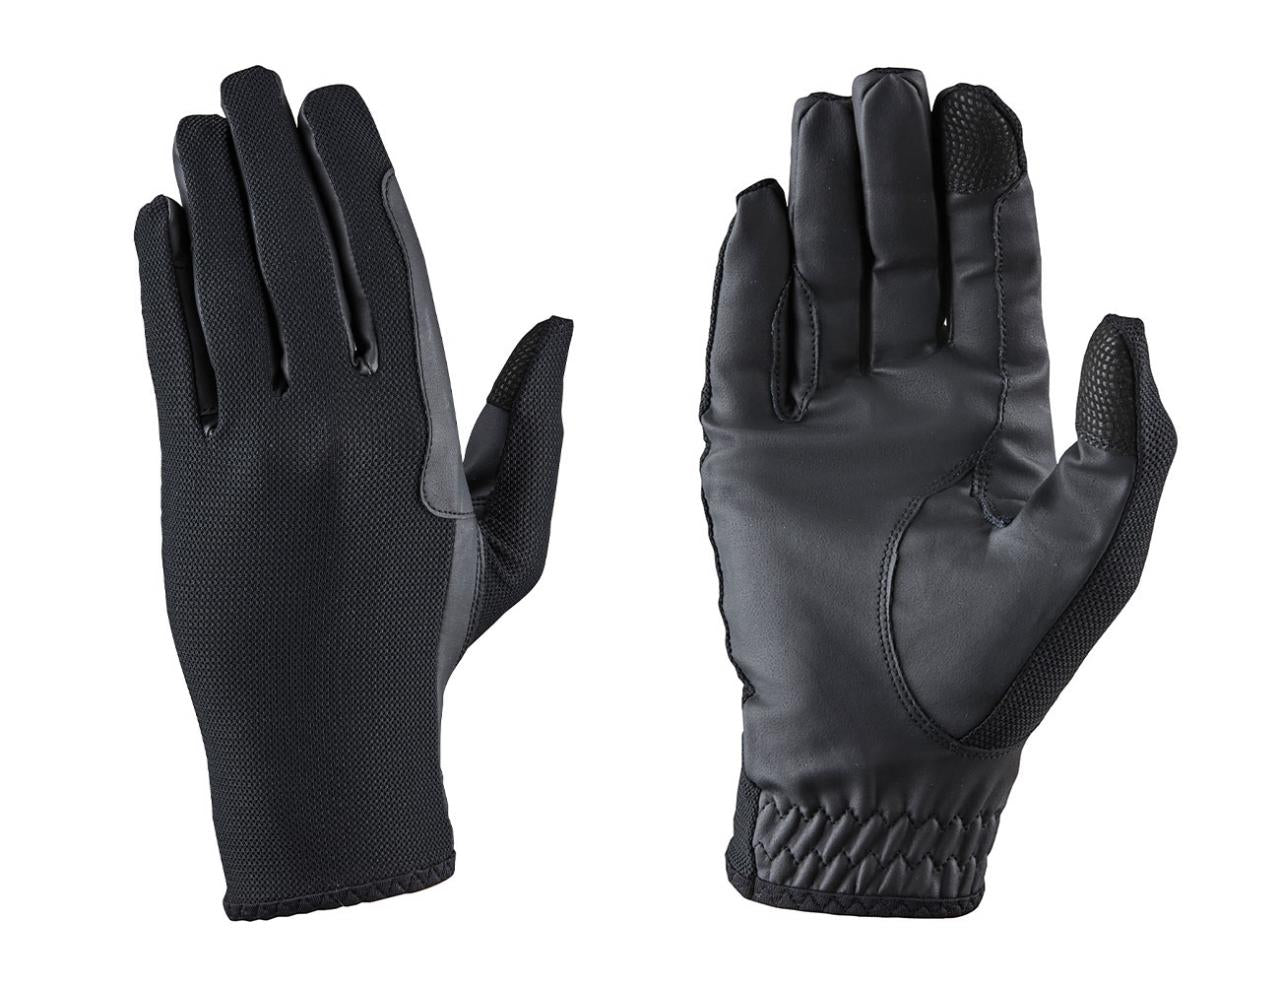 Dublin cool mesh gloves